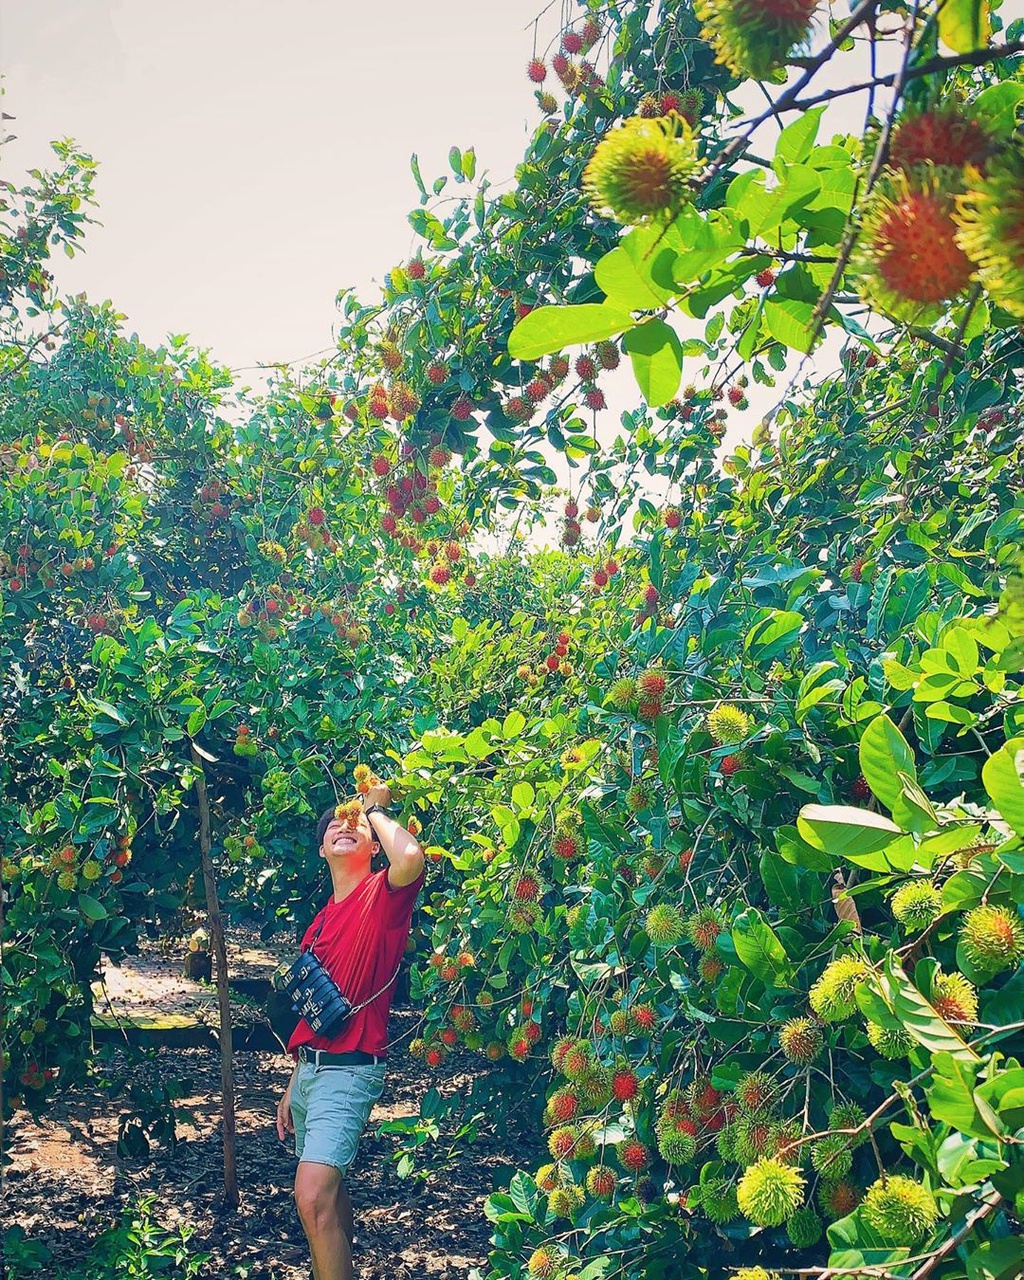 Ghé thăm 5 miệt vườn trái cây nổi tiếng ở miền Tây